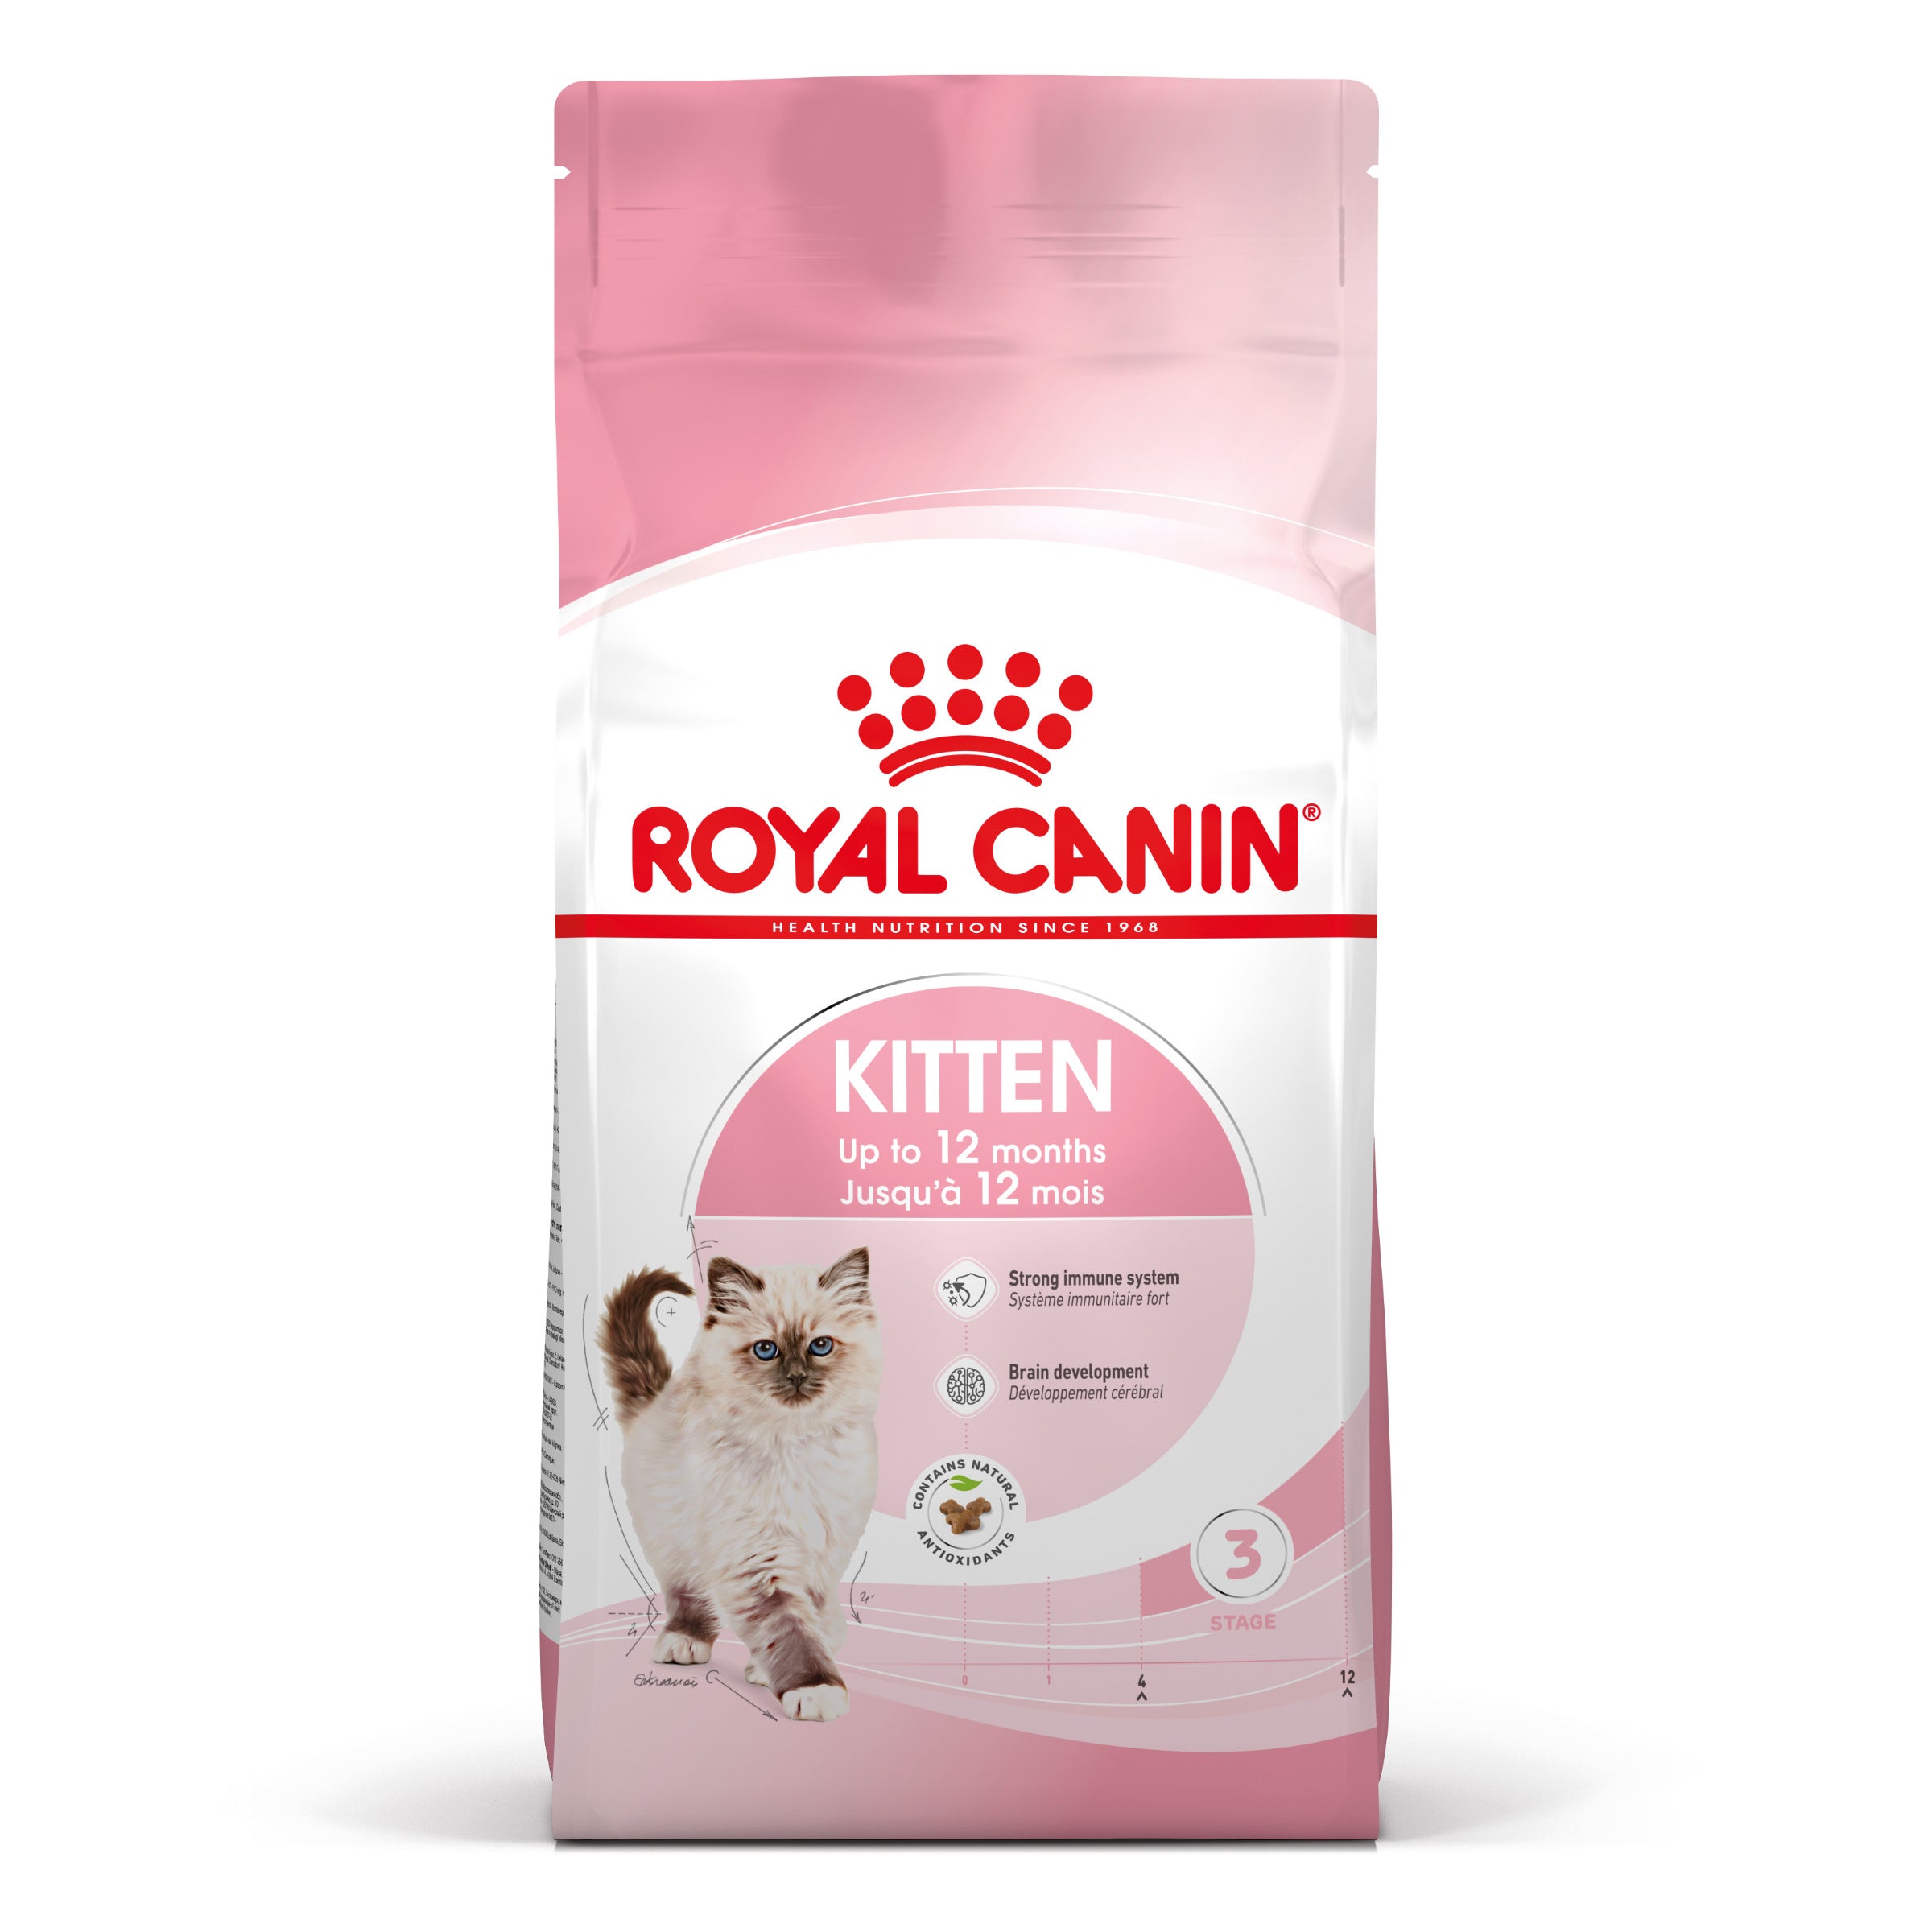 Se Royal canin - Royal Canin Kitten Tørfoder til killing 4kg - Cat Food hos Petpower.dk